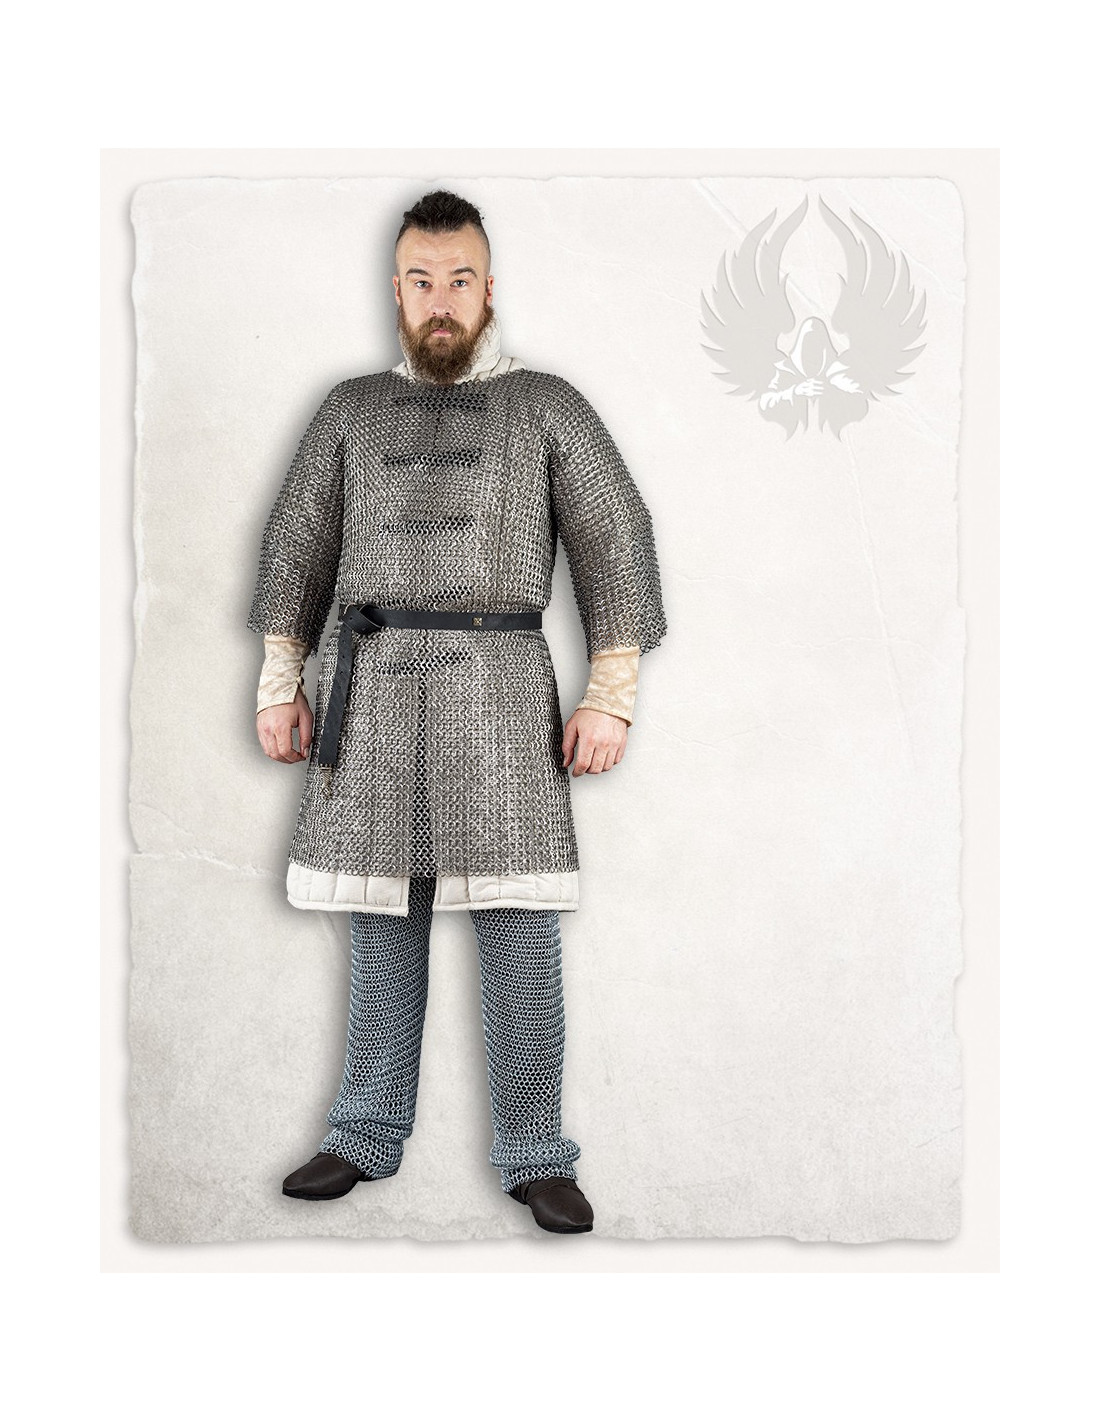 Cotta di maglia medievale modello John, finitura in acciaio lucido ⚔️  Negozio